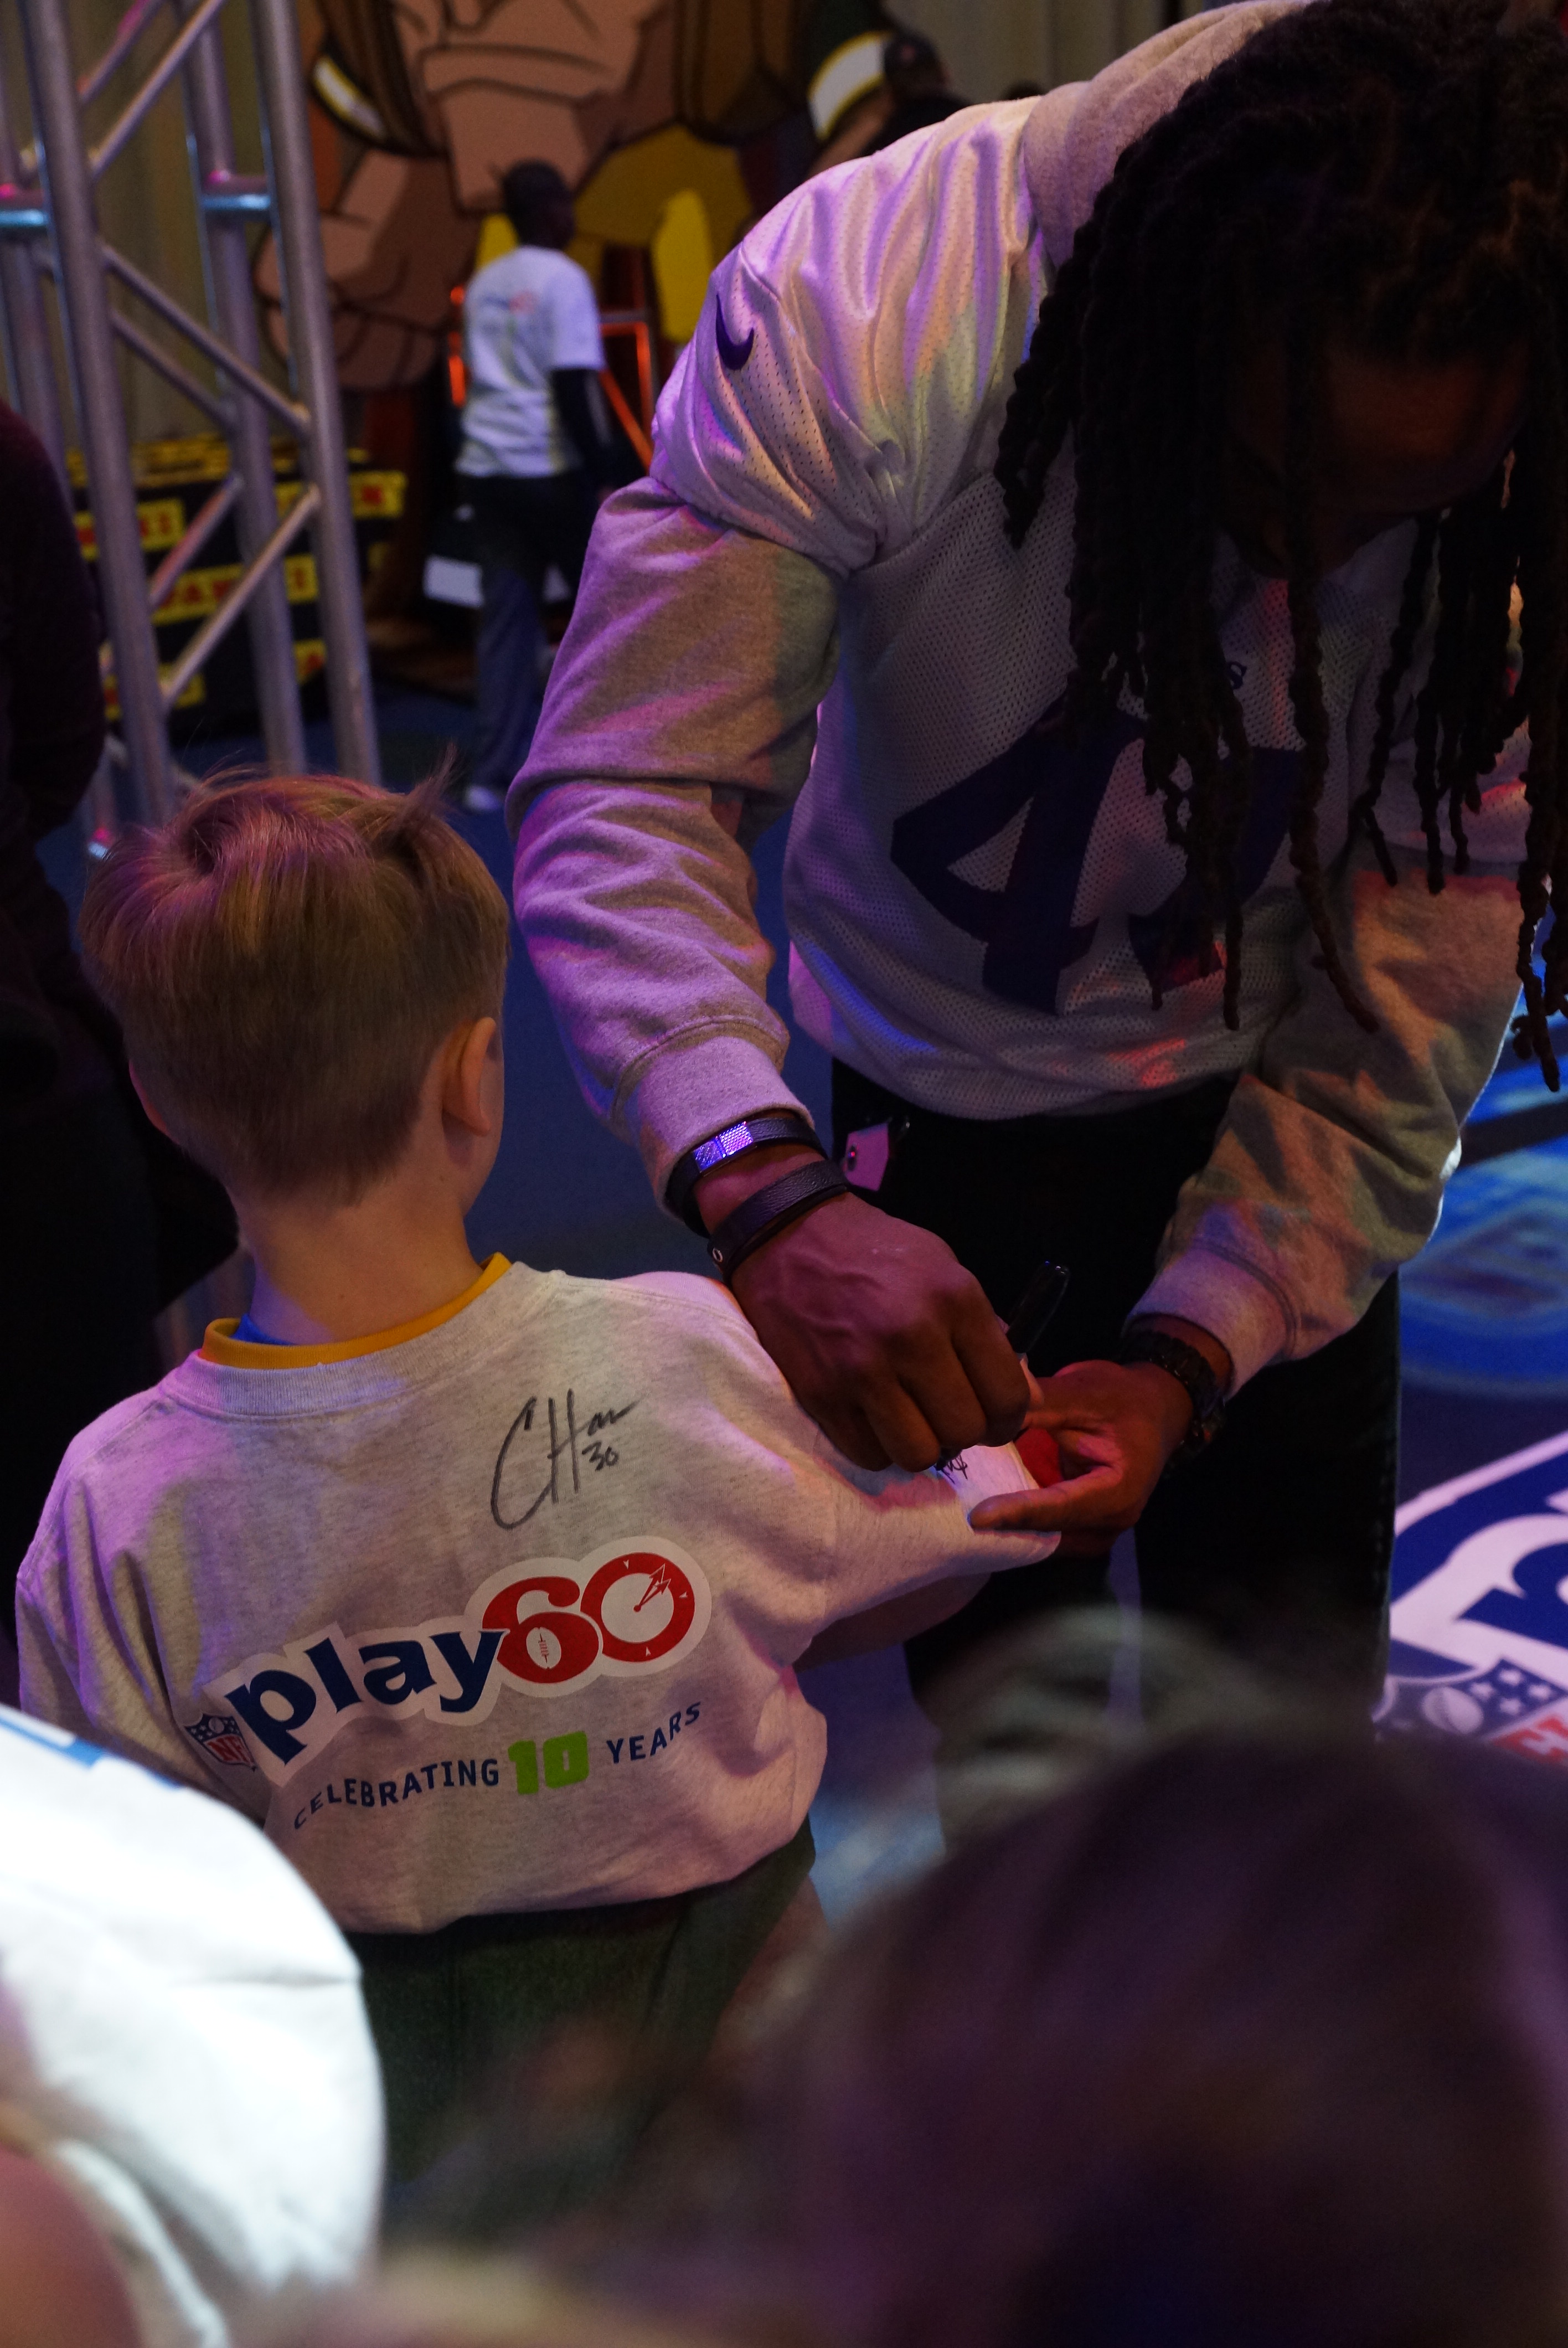 Anthony Harris, "safety" de los Vikings, firmó las camisetas de decenas de niños.